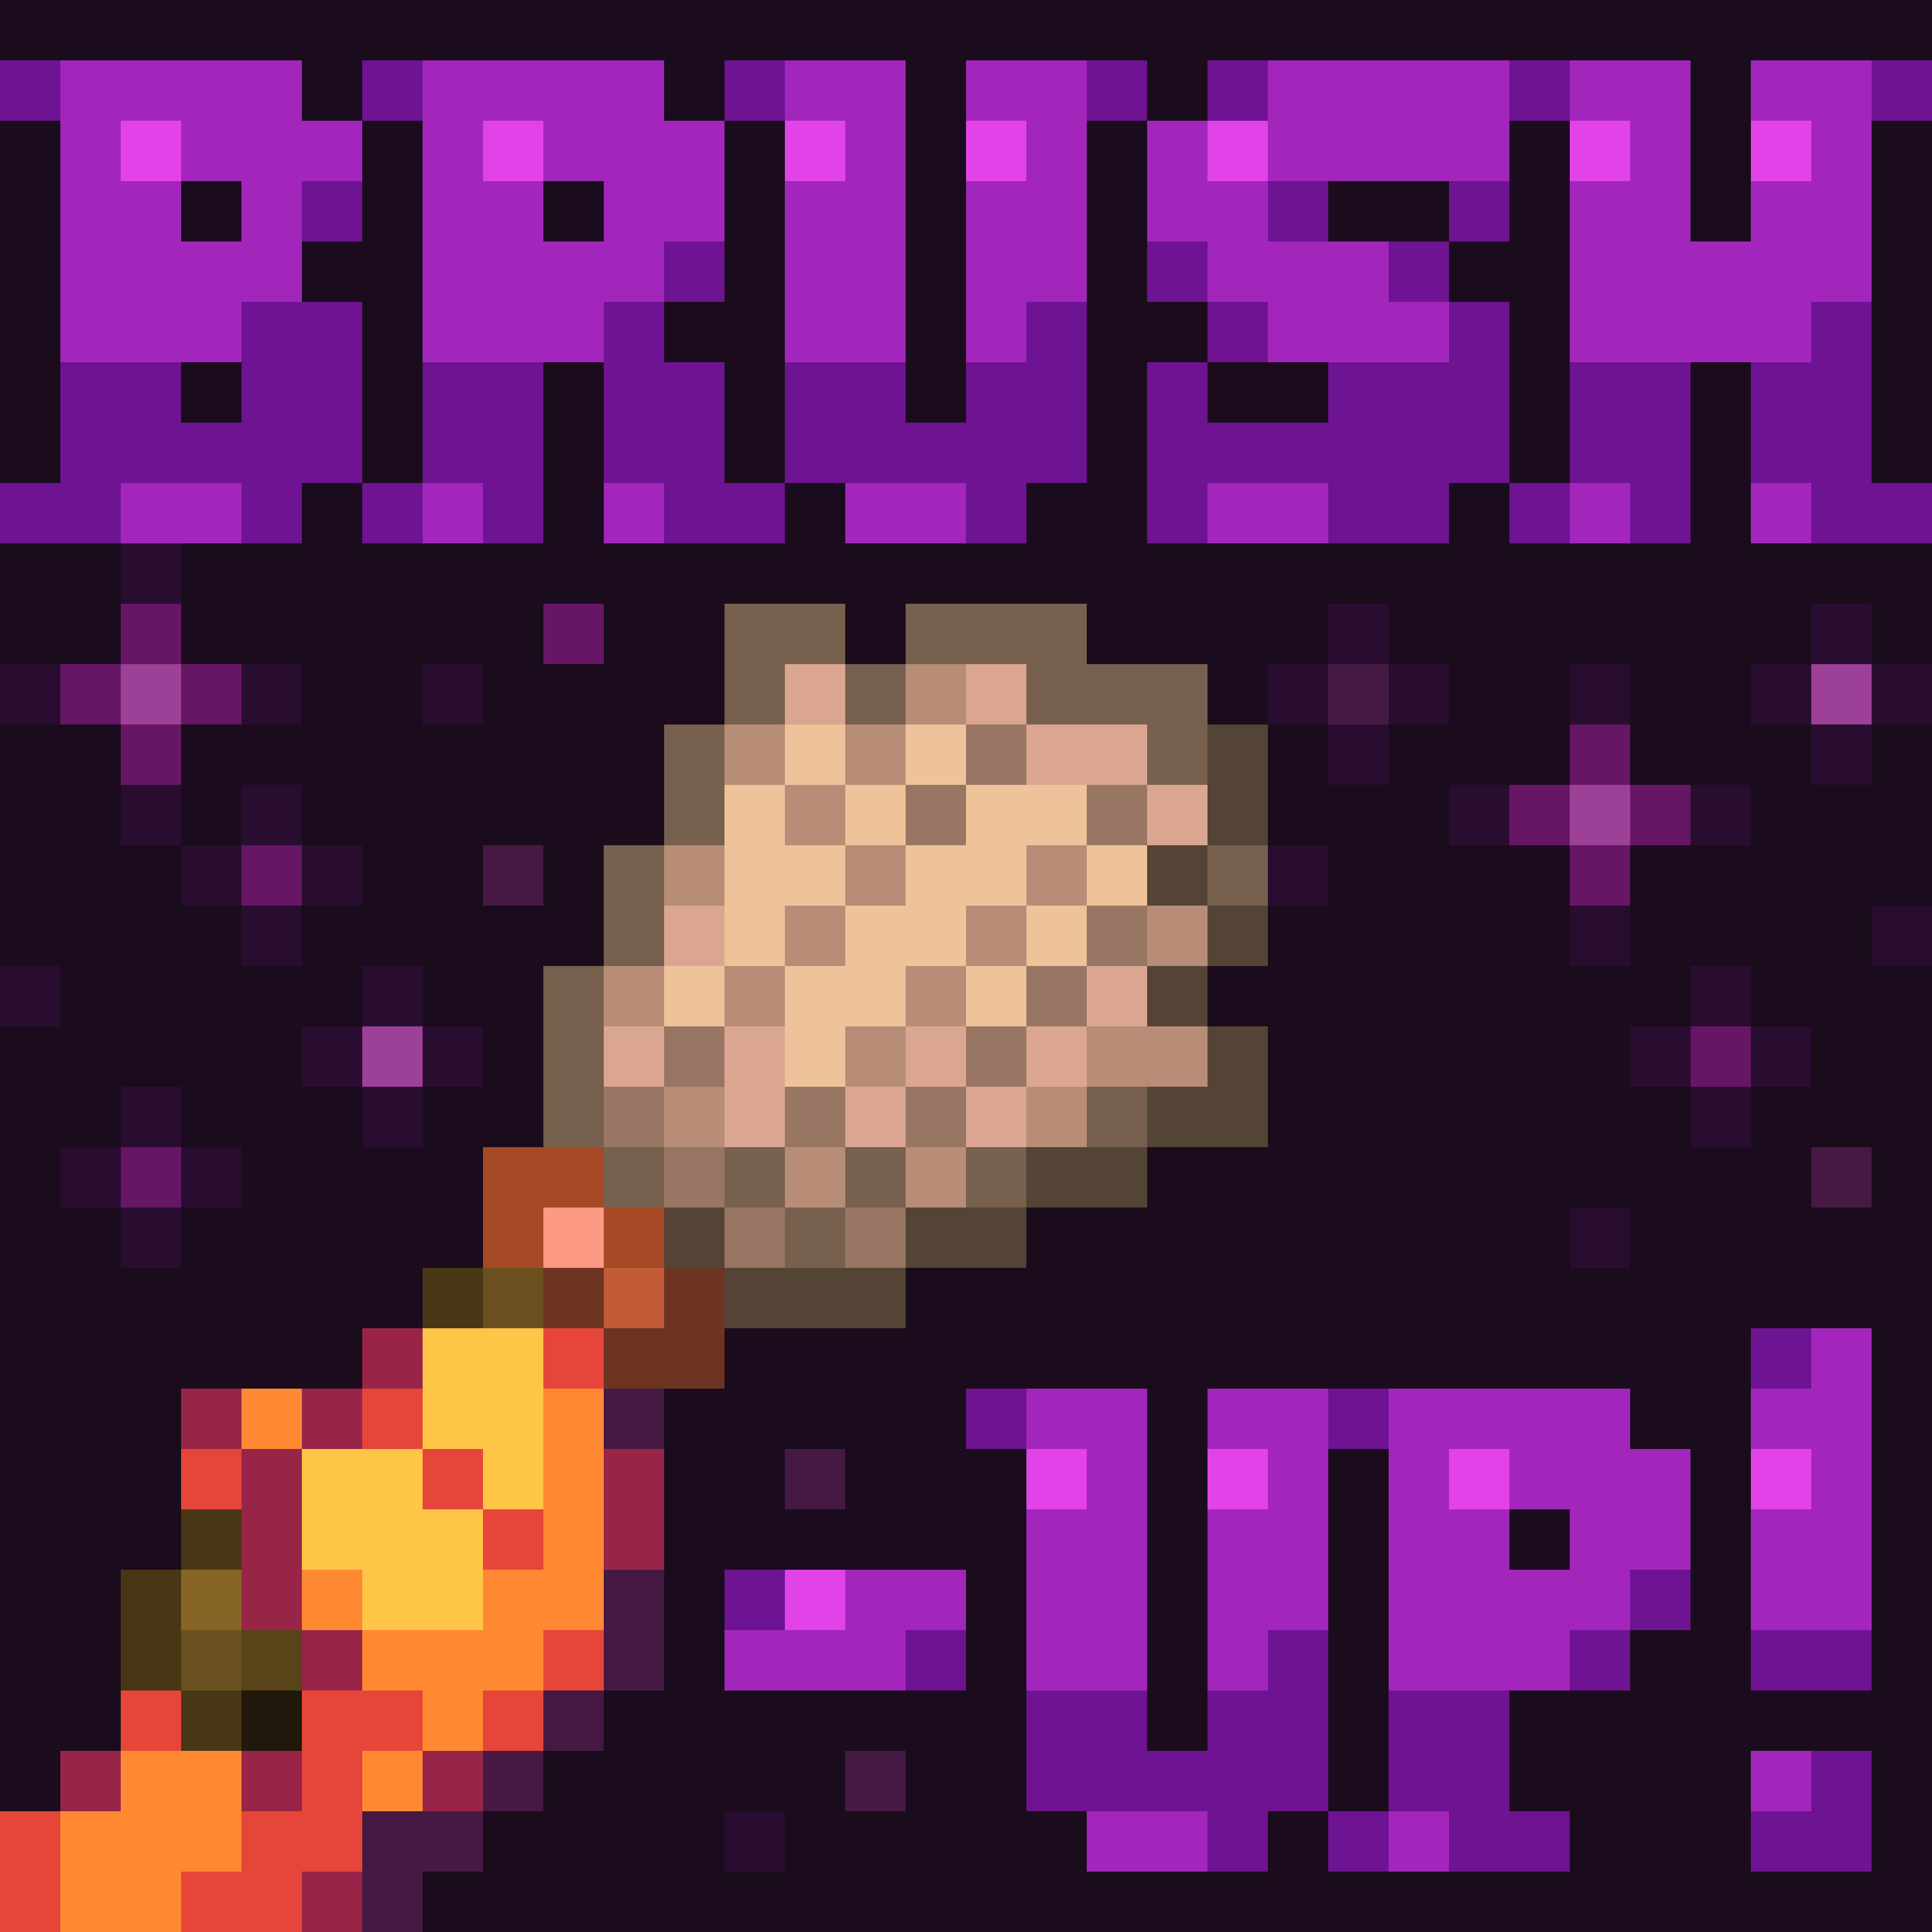 Brush-Up!